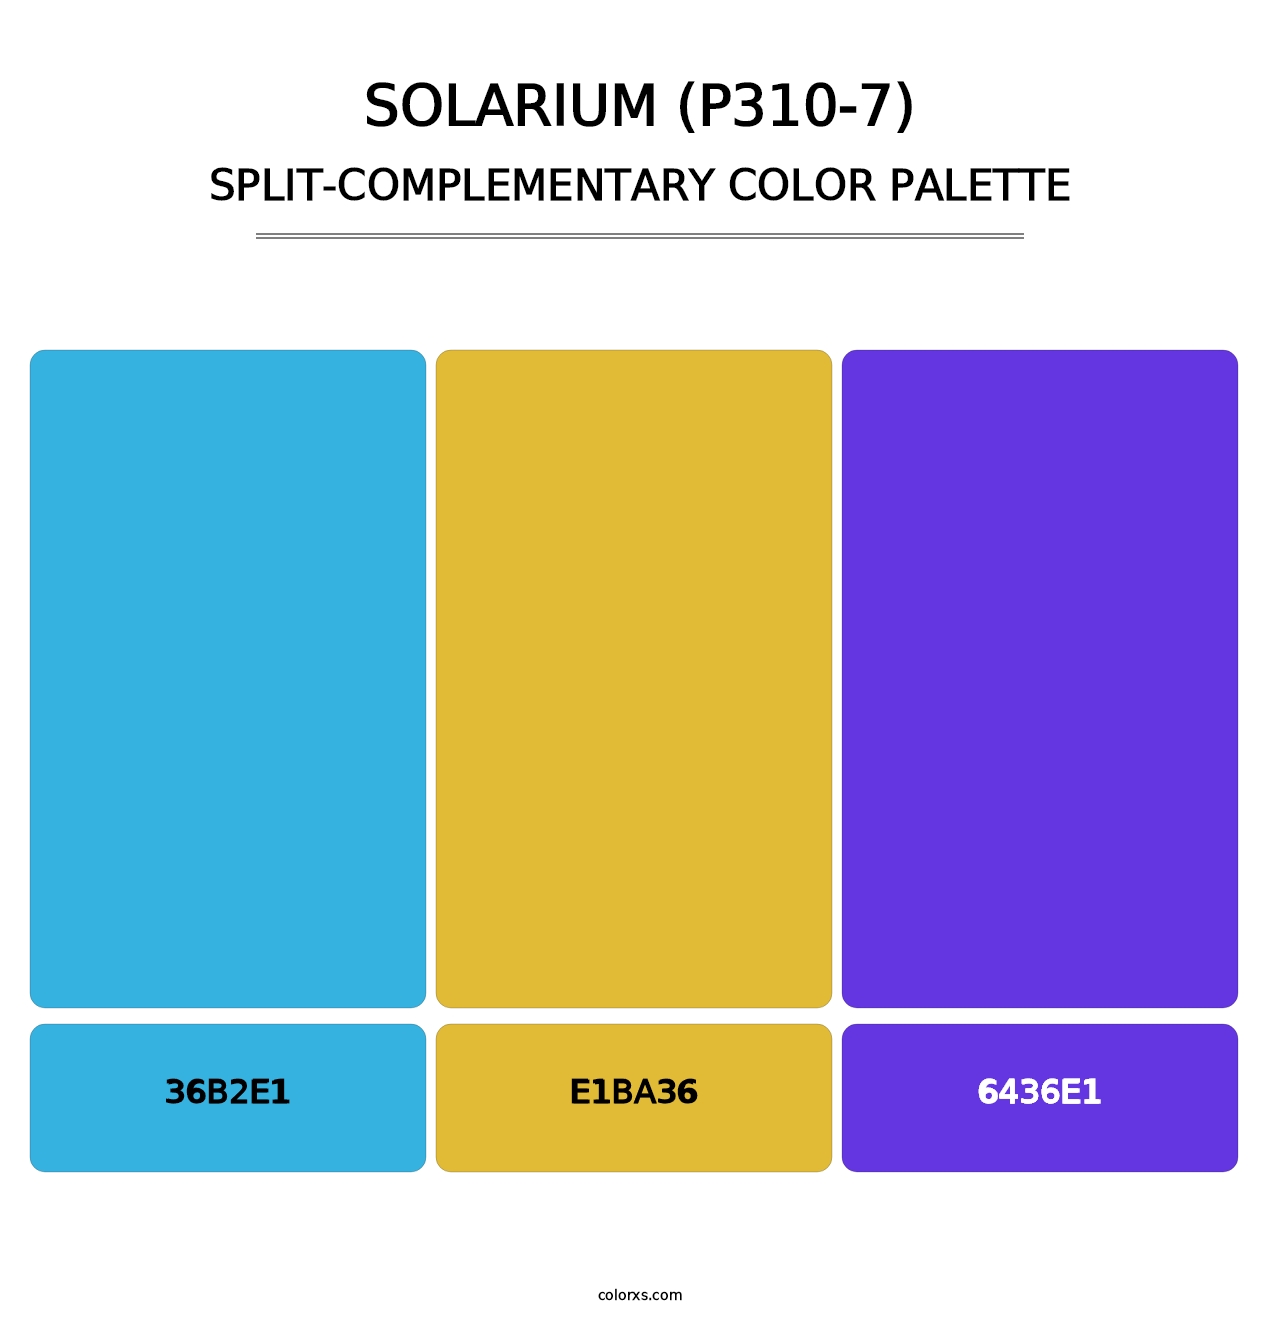 Solarium (P310-7) - Split-Complementary Color Palette